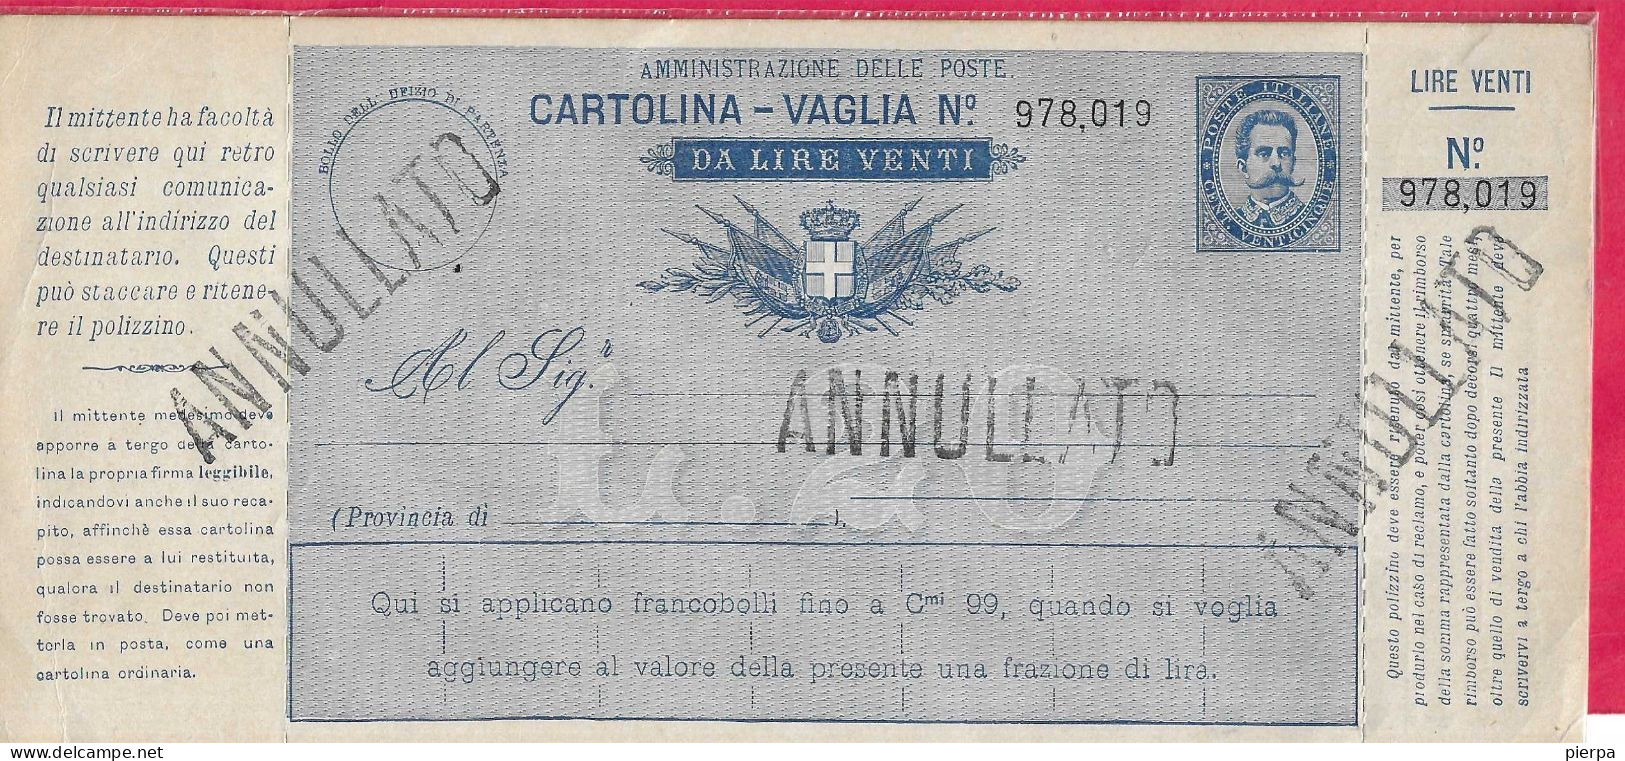 INTERO CARTOLINA-VAGLIA UMBERTO C.25 DA LIRE 20 (CAT. INT. 9A)  NUOVA - TIMBRO ANNULLATO - Entiers Postaux